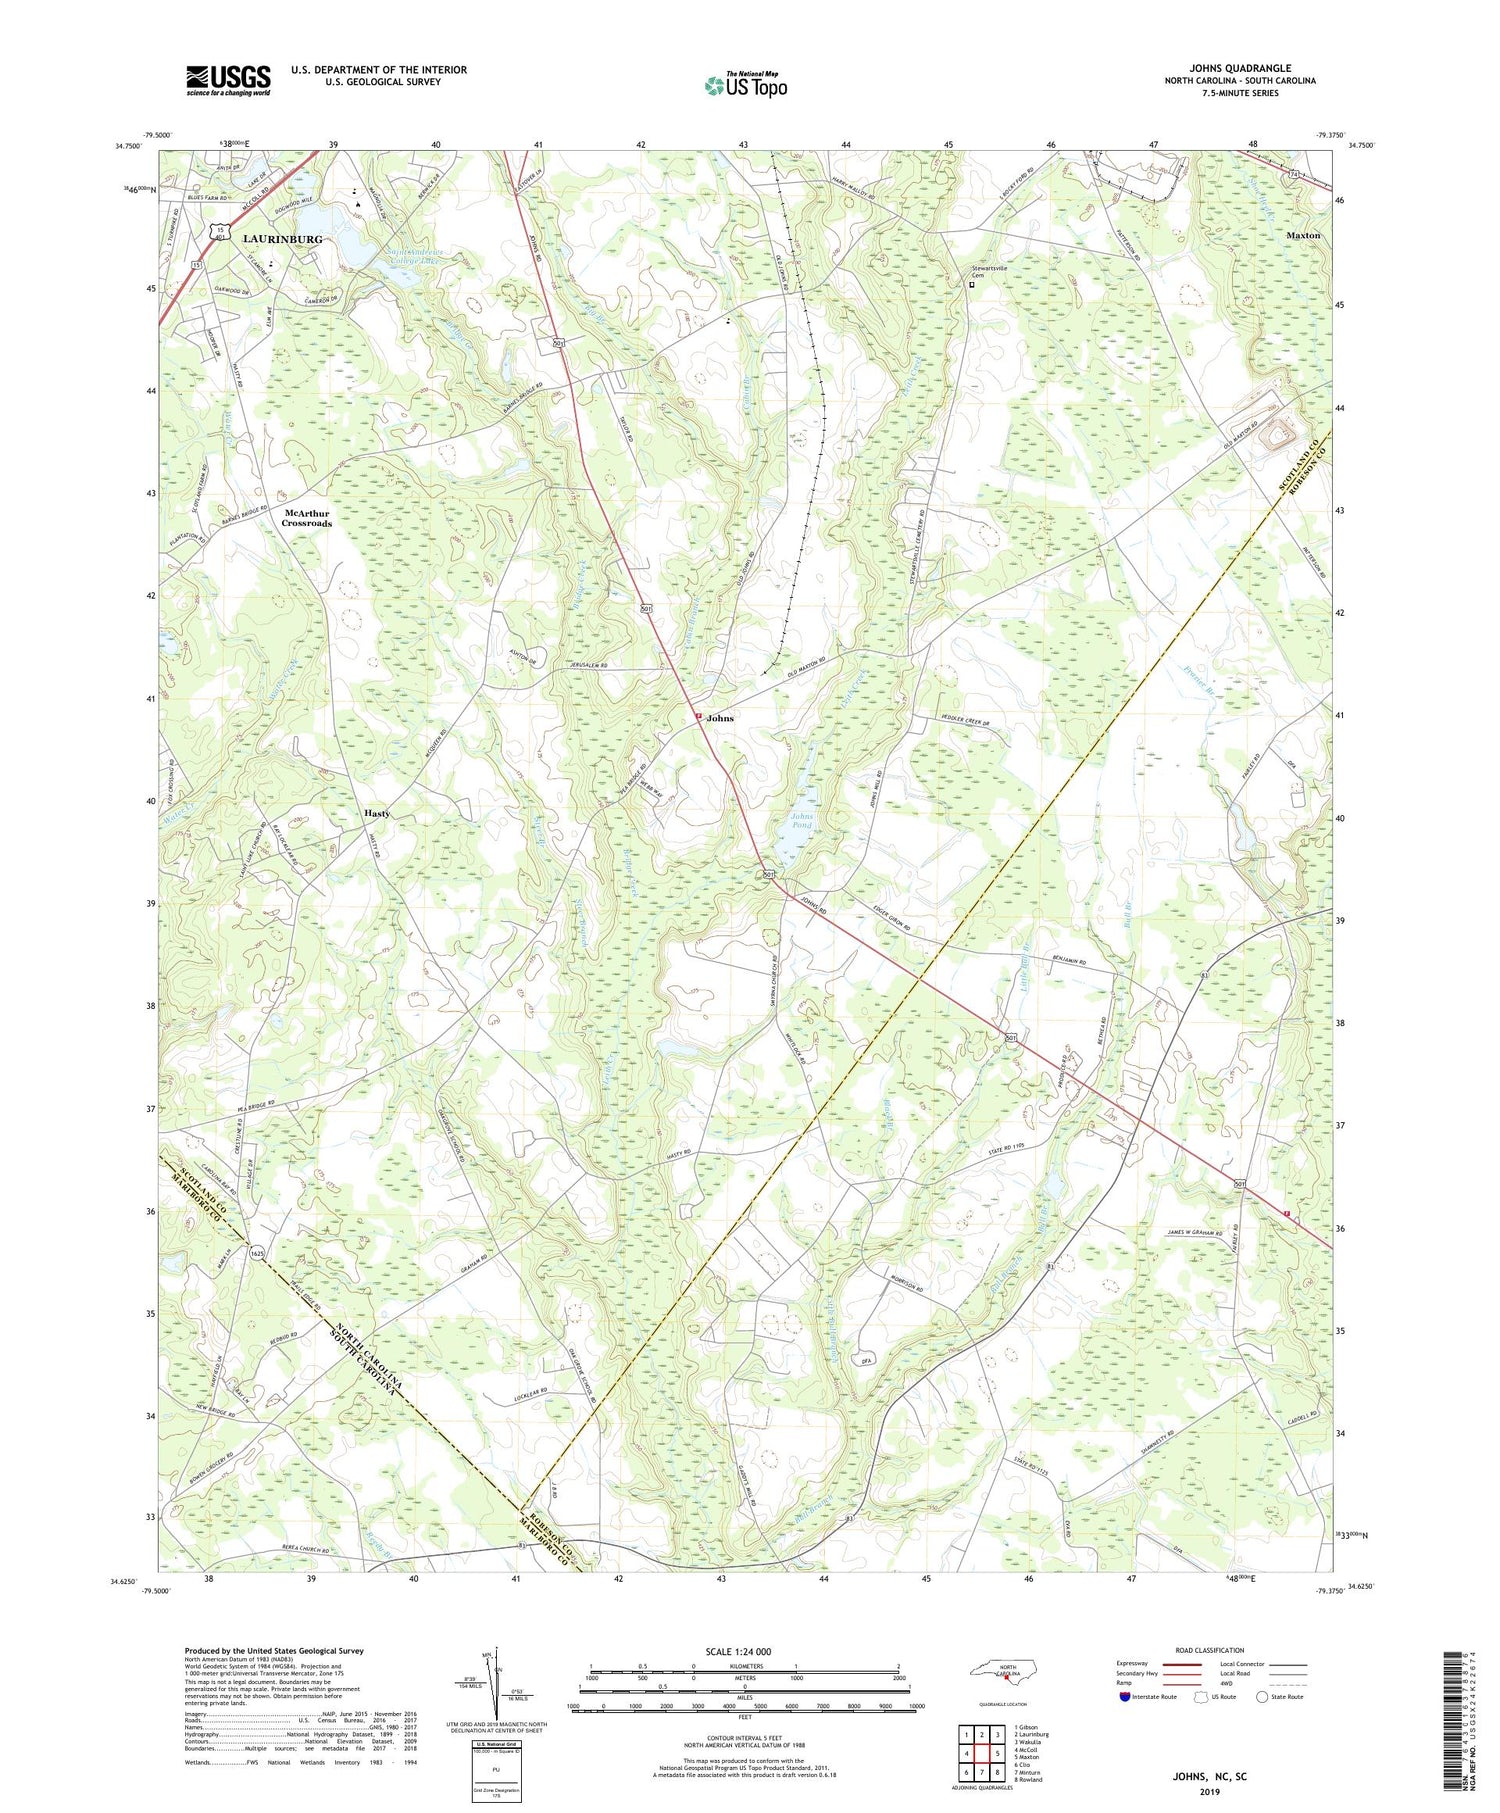 Johns North Carolina US Topo Map Image